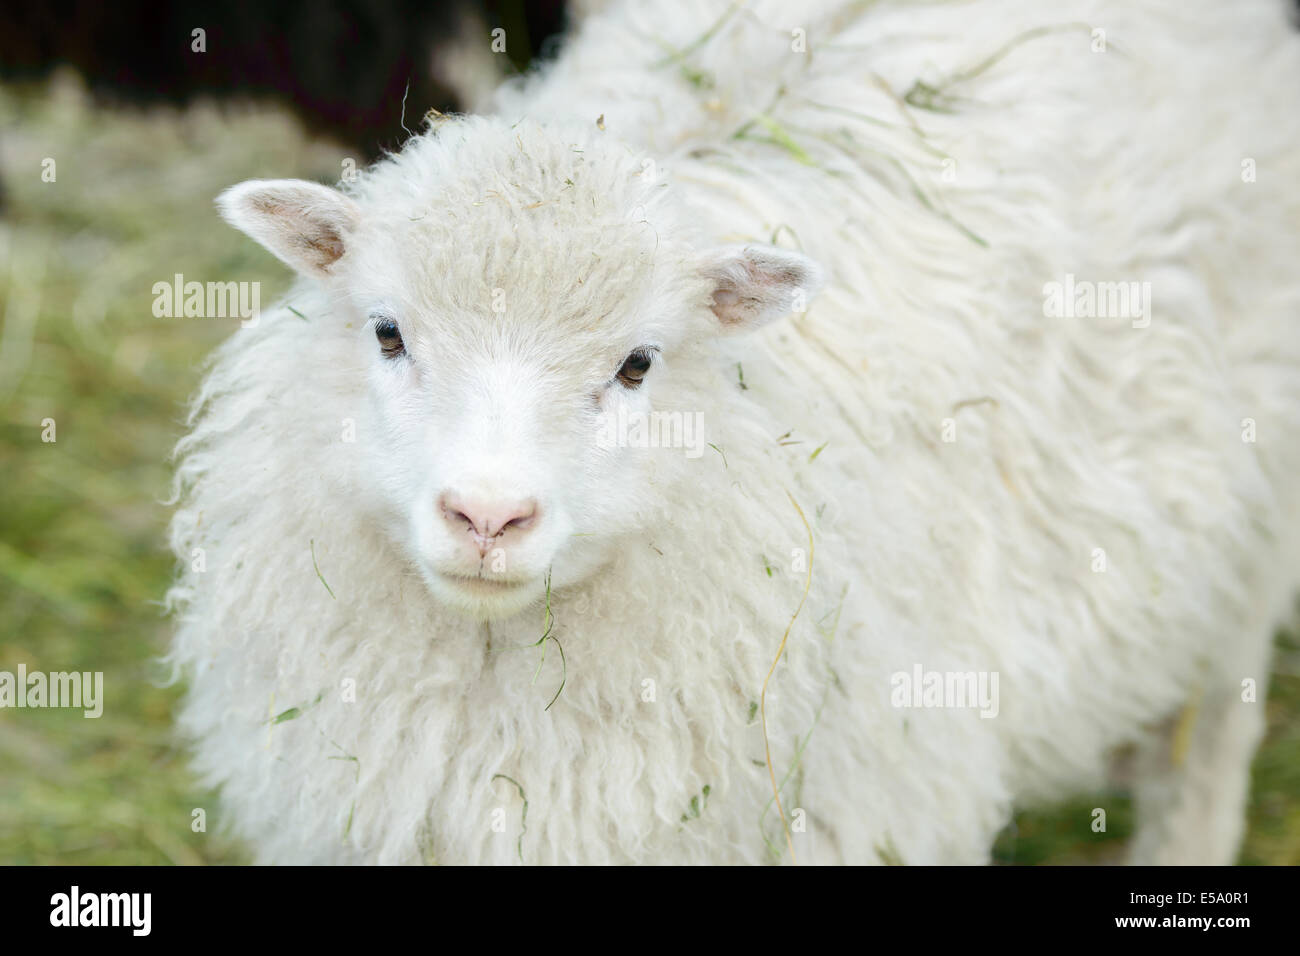 Uno de los blancos jóvenes ovejas domésticas, Ovis aries, mirando hacia usted, a quemarropa. Foto de stock